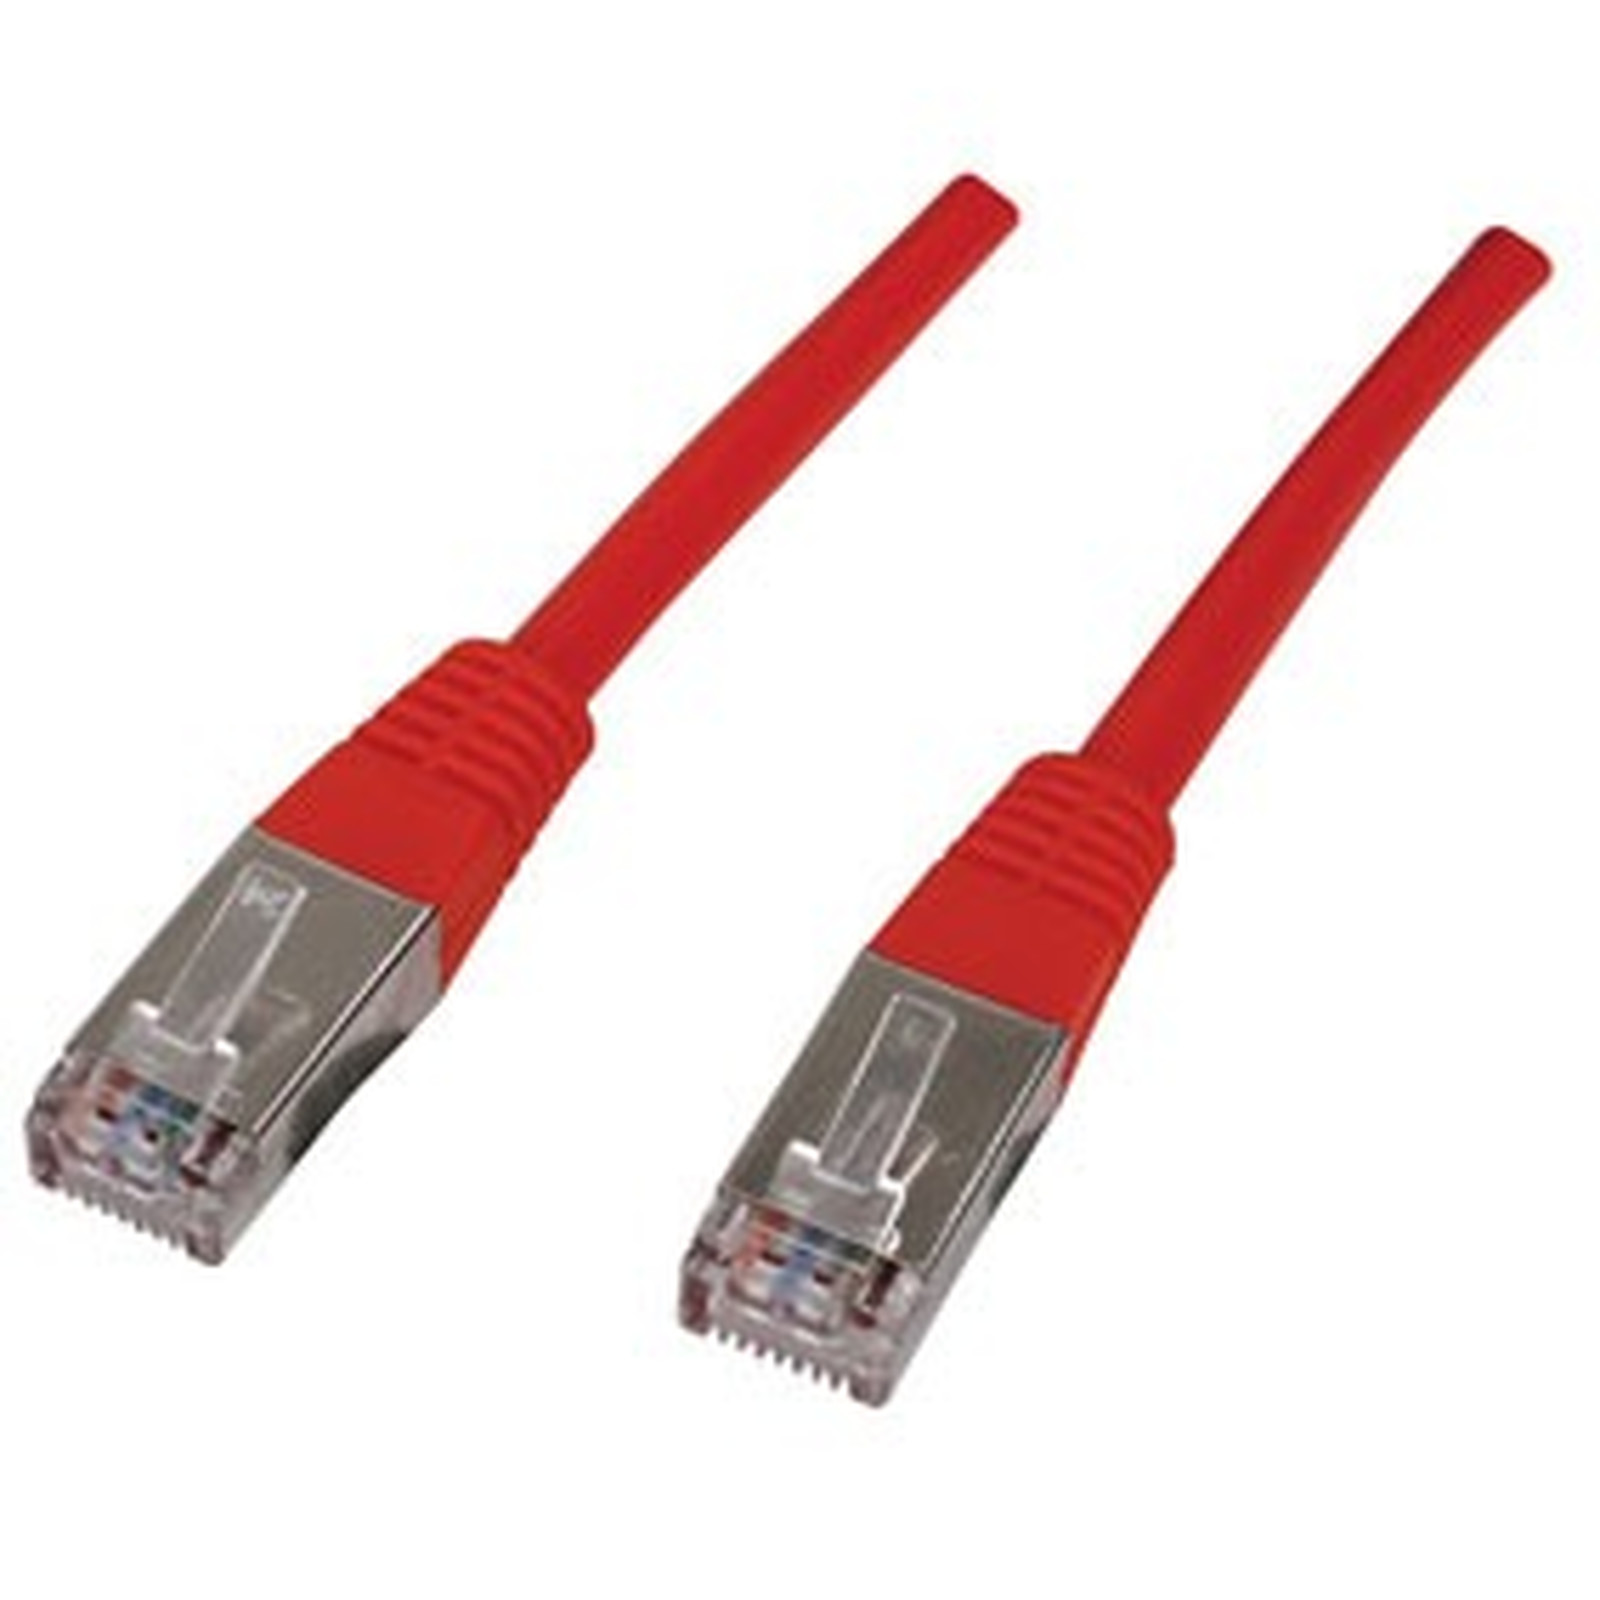 Cable RJ45 categorie 6 F/UTP 1 m (Rouge) - Cable RJ45 Generique